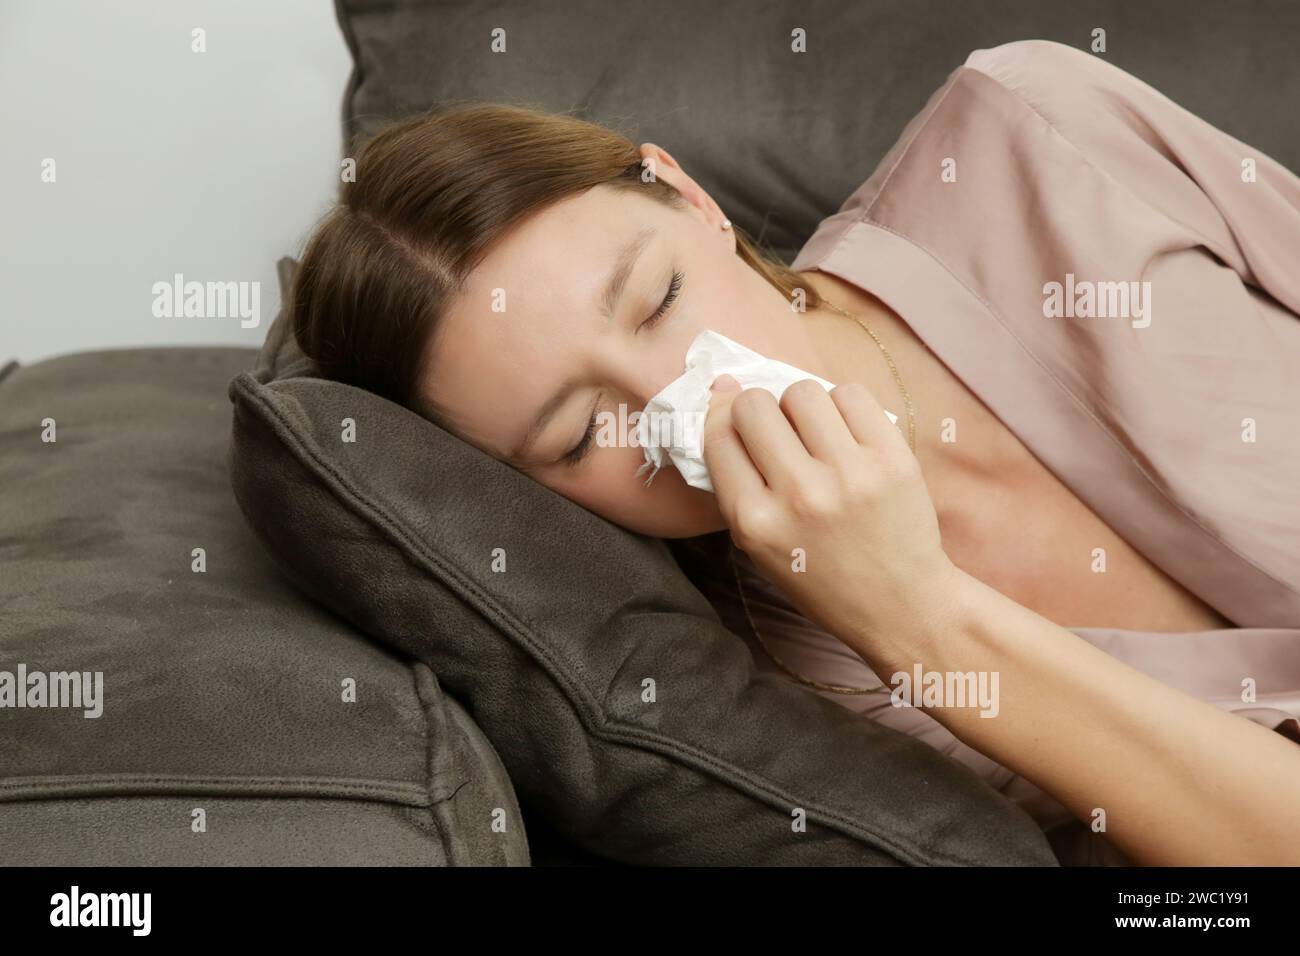 Junge Frau auf dem Sofa, die Nase in ein weißes Papiertuch bläst. Mädchen mit Allergiesymptomen niesen in ein Gewebe. Grippe, Erkältung oder Allergie-Symptom Stockfoto